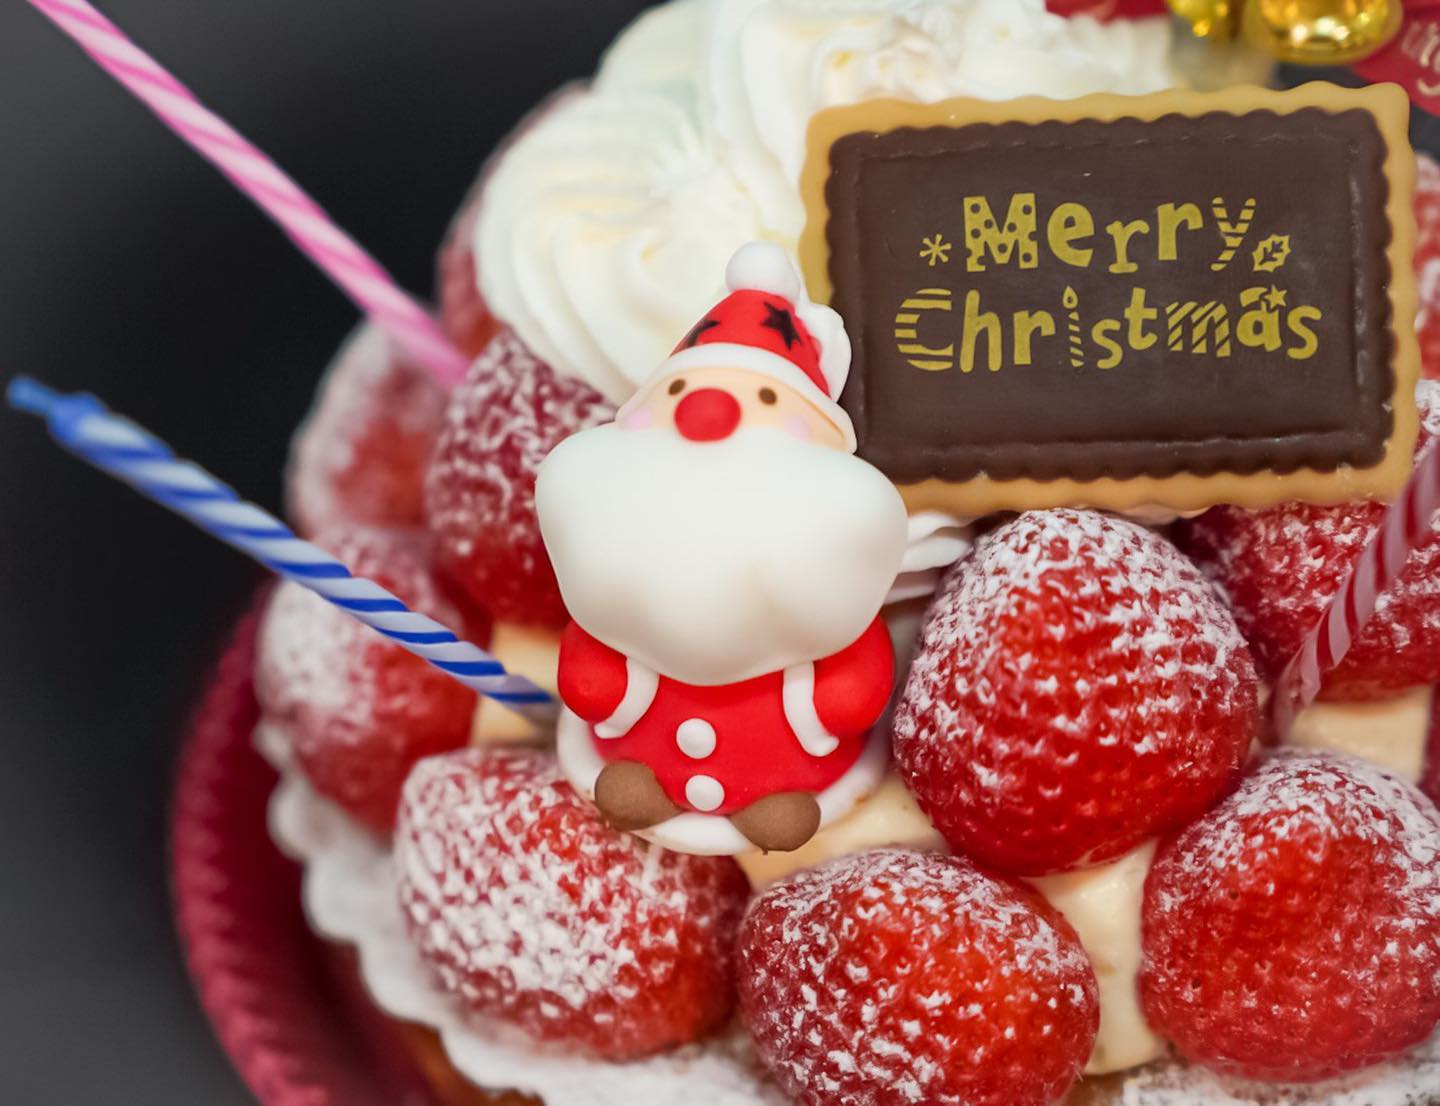 本日も沢山のお客様にご来店頂き誠にありがとうございました

2021 クリスマスケーキのご紹介をさせていただきます。

*Xmas 苺のタルト*

アーモンドクリームを絞り香ばしく焼き上げたタルト生地にカスタードクリームと苺を沢山飾った贅沢な一品です。

毎年人気のクリスマスケーキです滑らかなカスタードクリームと苺の程よい酸味をお楽しみくださいませ。

*限定商品の為、台数に達し次第ご予約終了となりますので、お早めのご予約をおすすめしております。

当店のクリスマスケーキを是非ご堪能くださいませ

※ クリスマスケーキのご予約に関しましては、店頭のみのお受け付けとなりまして、先にお支払い頂きましてご予約完了となります。

※ 日時・時間・商品の変更やキャンセルはお受け出来ませんので、大変お手数ではございますが再度ご確認の上、ご予約を宜しくお願い申し上げます。

明日も皆様のご来店をスタッフ一同心よりお待ちしております🥰宜しくお願い致します️
*
新型コロナウィルス感染症対策といたしまして、入り口にございます、アルコール消毒液と赤外線温度センサーをご使用下さいませ。

ご入店の際は、マスクの着用を宜しくお願い致します。

お並び頂く際は、ソーシャルディスタンスのご協力を宜しくお願い致します。

出来るだけ少人数様でのお買い物のご協力を宜しくお願い致します。

お客様及び店舗従業員の安心安全を第一に感染拡大防止に取り組みながら営業をして参ります。お客様には大変ご不便をお掛けしますが、ご理解とご協力を賜りますよう、心よりお願い申し上げます。

*